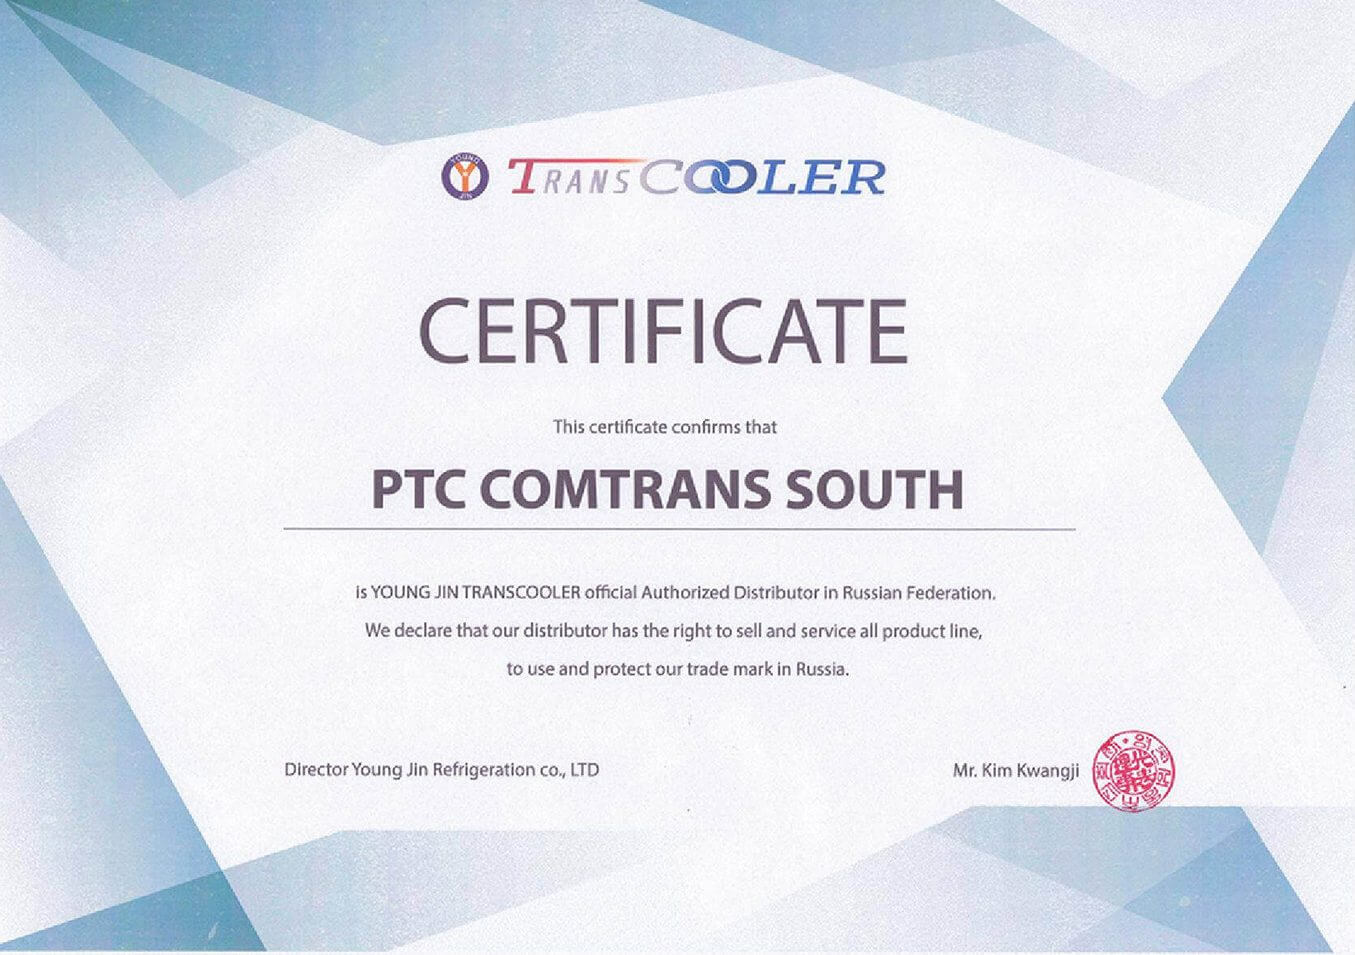 Сертификат официального сервисного партнера Trans Cooler